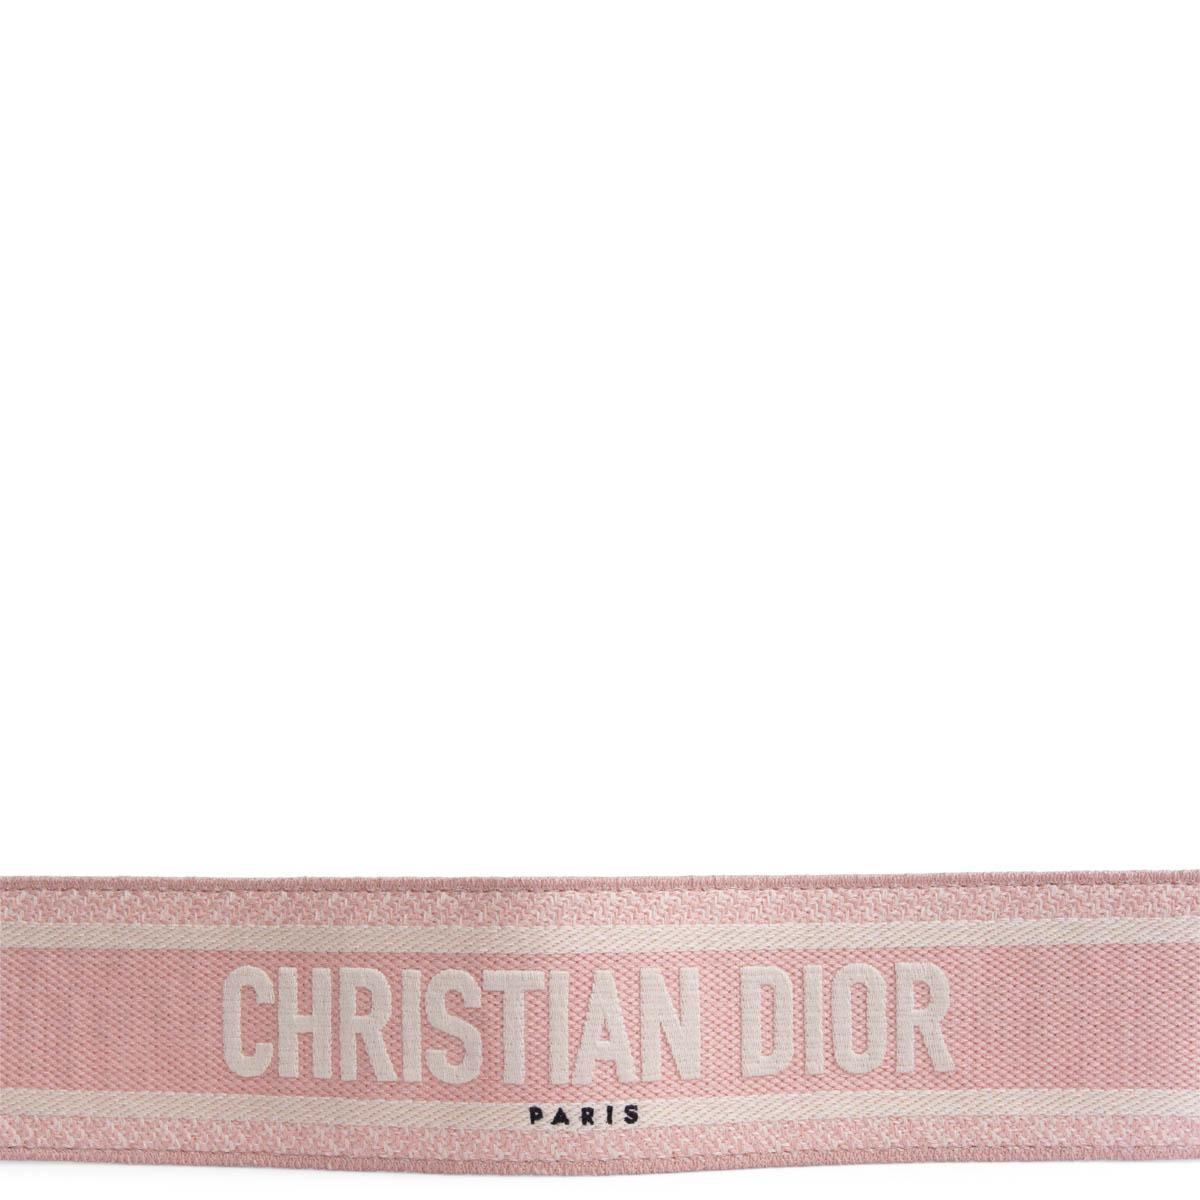 100% authentisches Christian Dior Taschenband aus hellrosa und ecrufarbenem Canvas mit goldfarbenen Schließen und schwarzem Lederbesatz. Wurde getragen und weist leichte Druckstellen an den inneren Lederteilen auf. Insgesamt in ausgezeichnetem